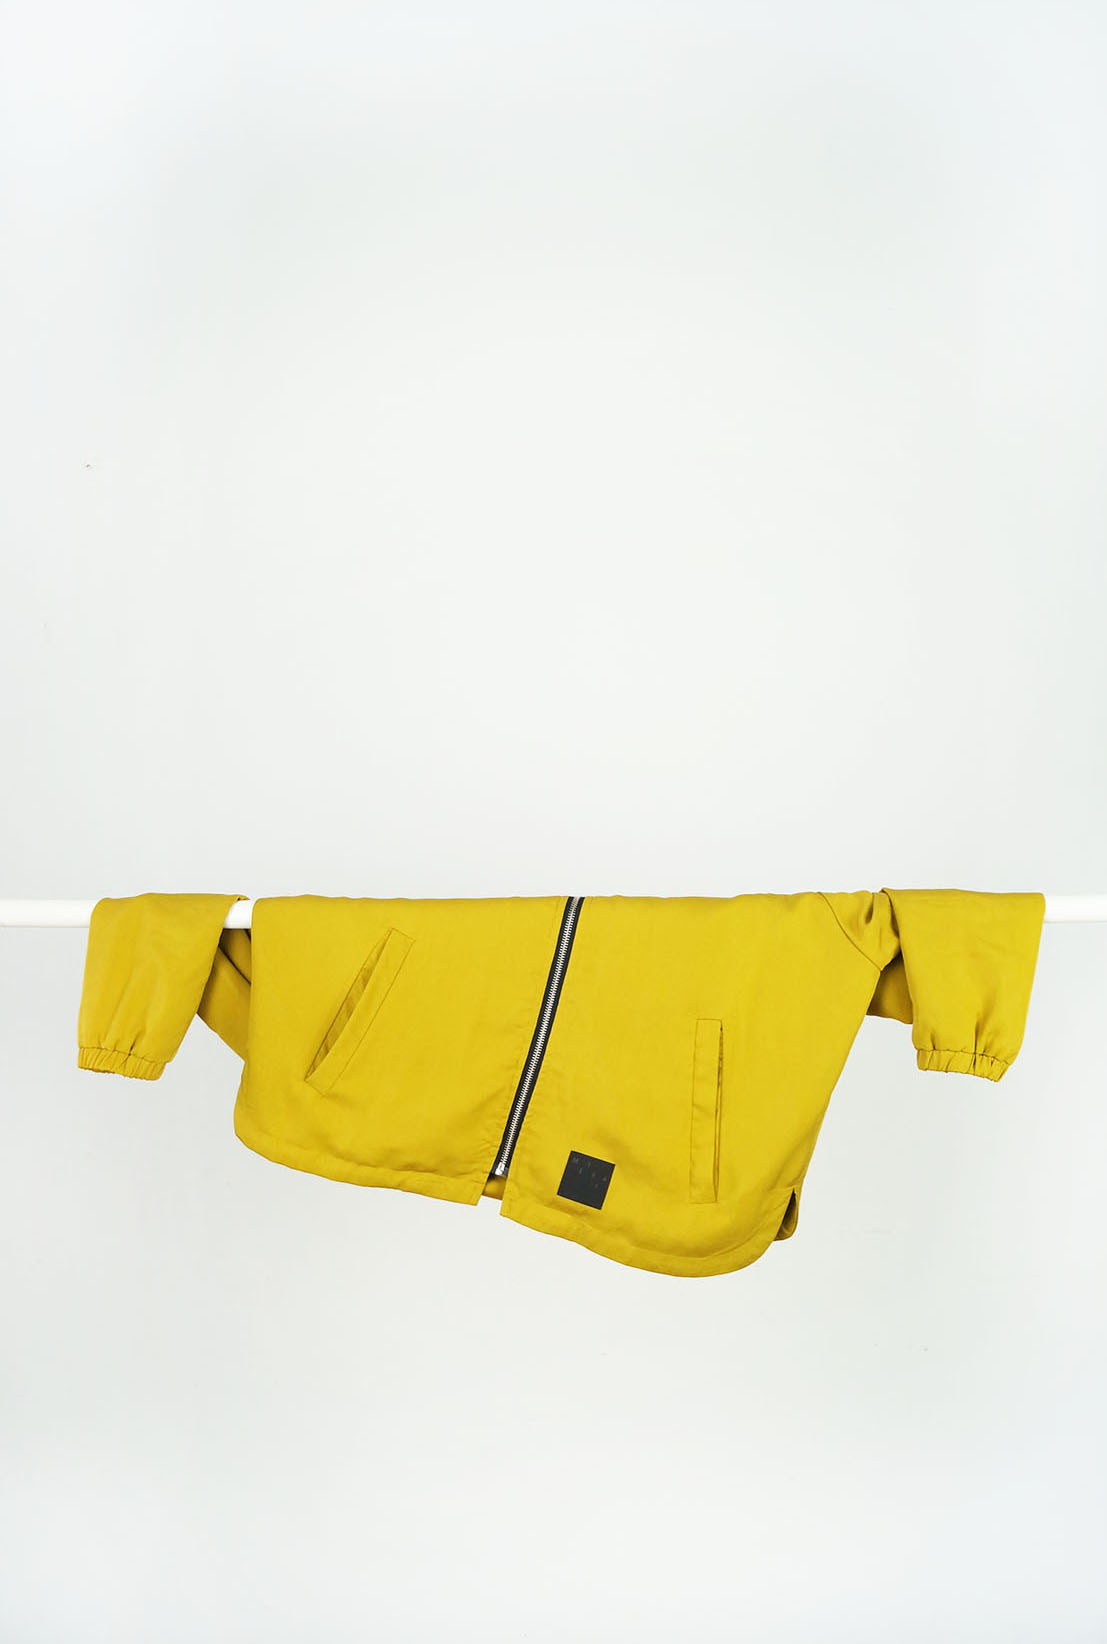 Kurtka  MIÓD - Damska kurtka bomberka ATRAMENT w klasycznej formie, w kolorze ciemnego, atramentowego granatu. Kurtka szyta ręcznie. Wodoodporny, poliester + bawełna